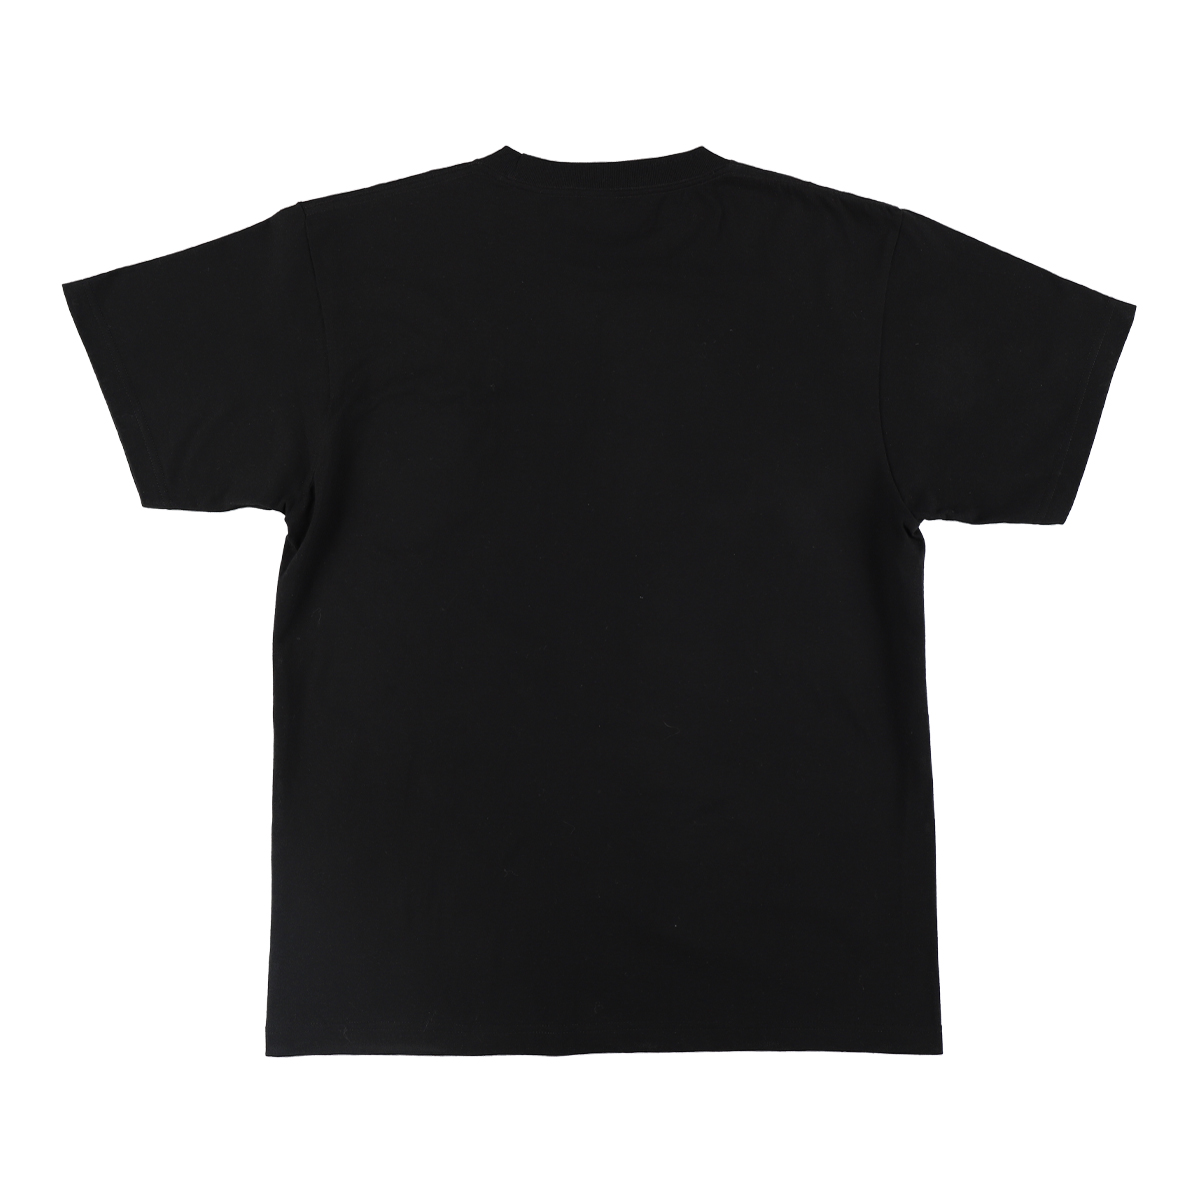 Tシャツ U ブラック 47537 《ウルトラマンSHOP限定》